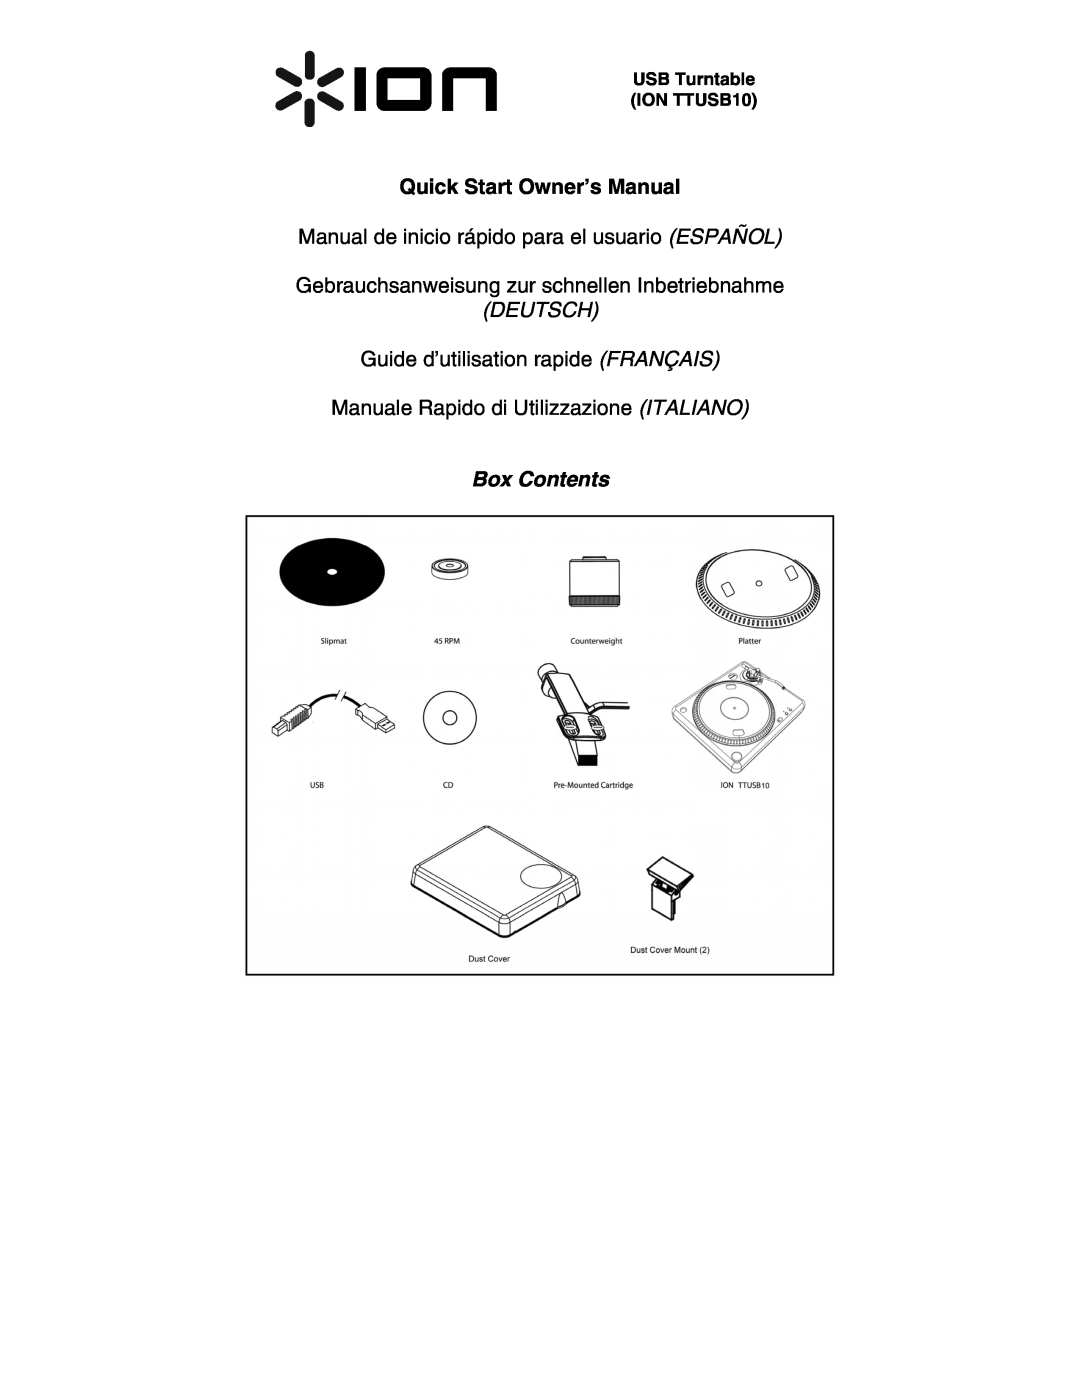 ION quick start USB Turntable ION TTUSB10, Manual de inicio rápido para el usuario ESPAÑOL, Deutsch, Box Contents 